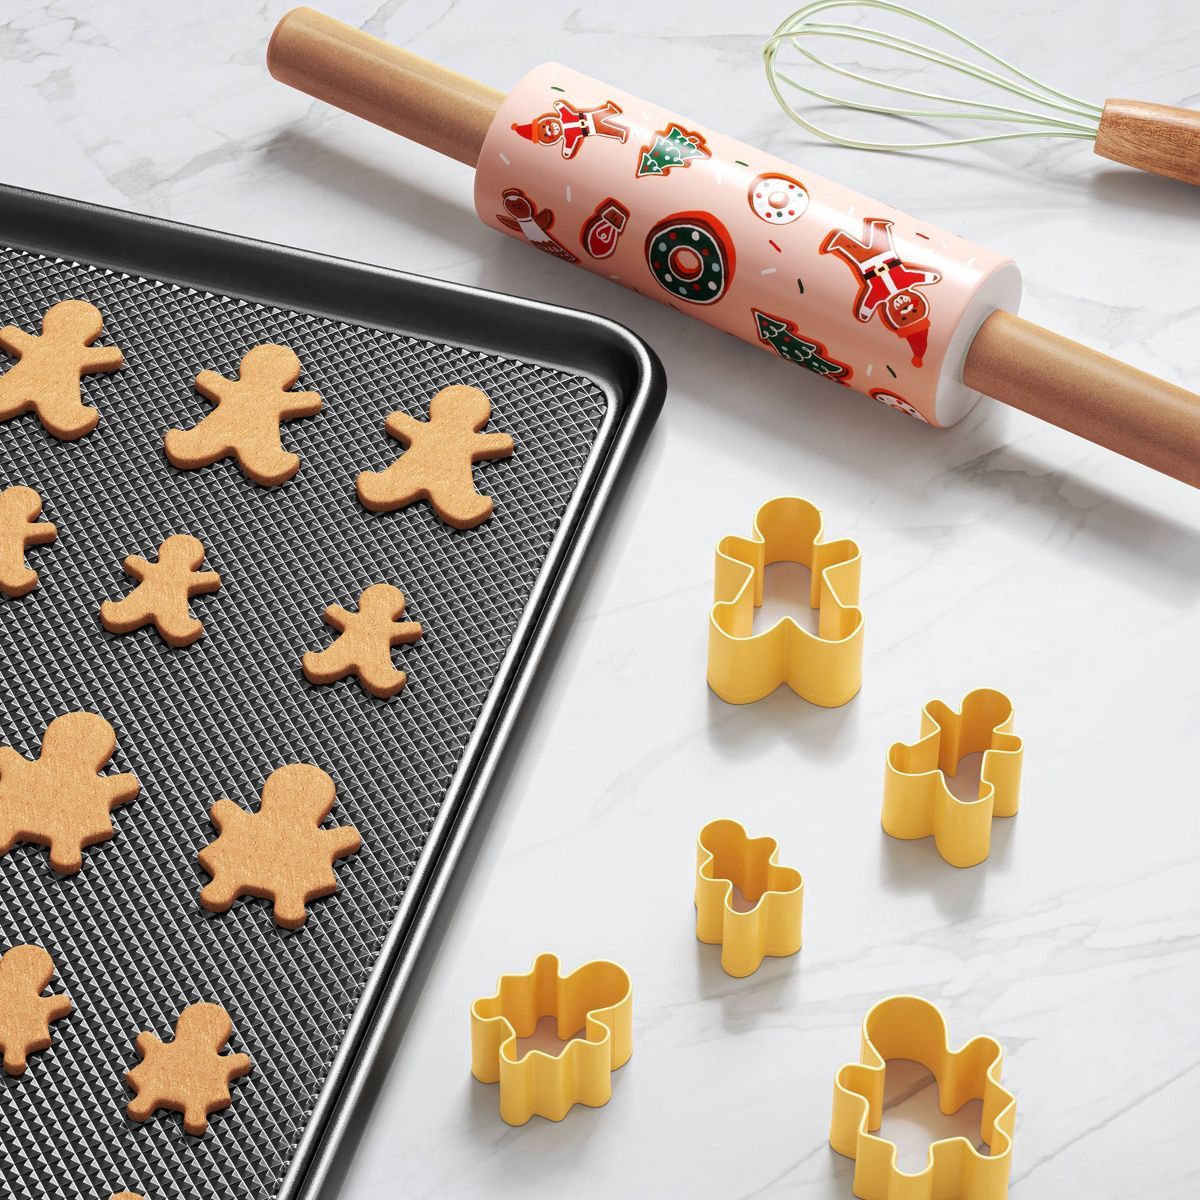 2" Christmas cookies Handled Rolling Pin - Wondershop™ | Target